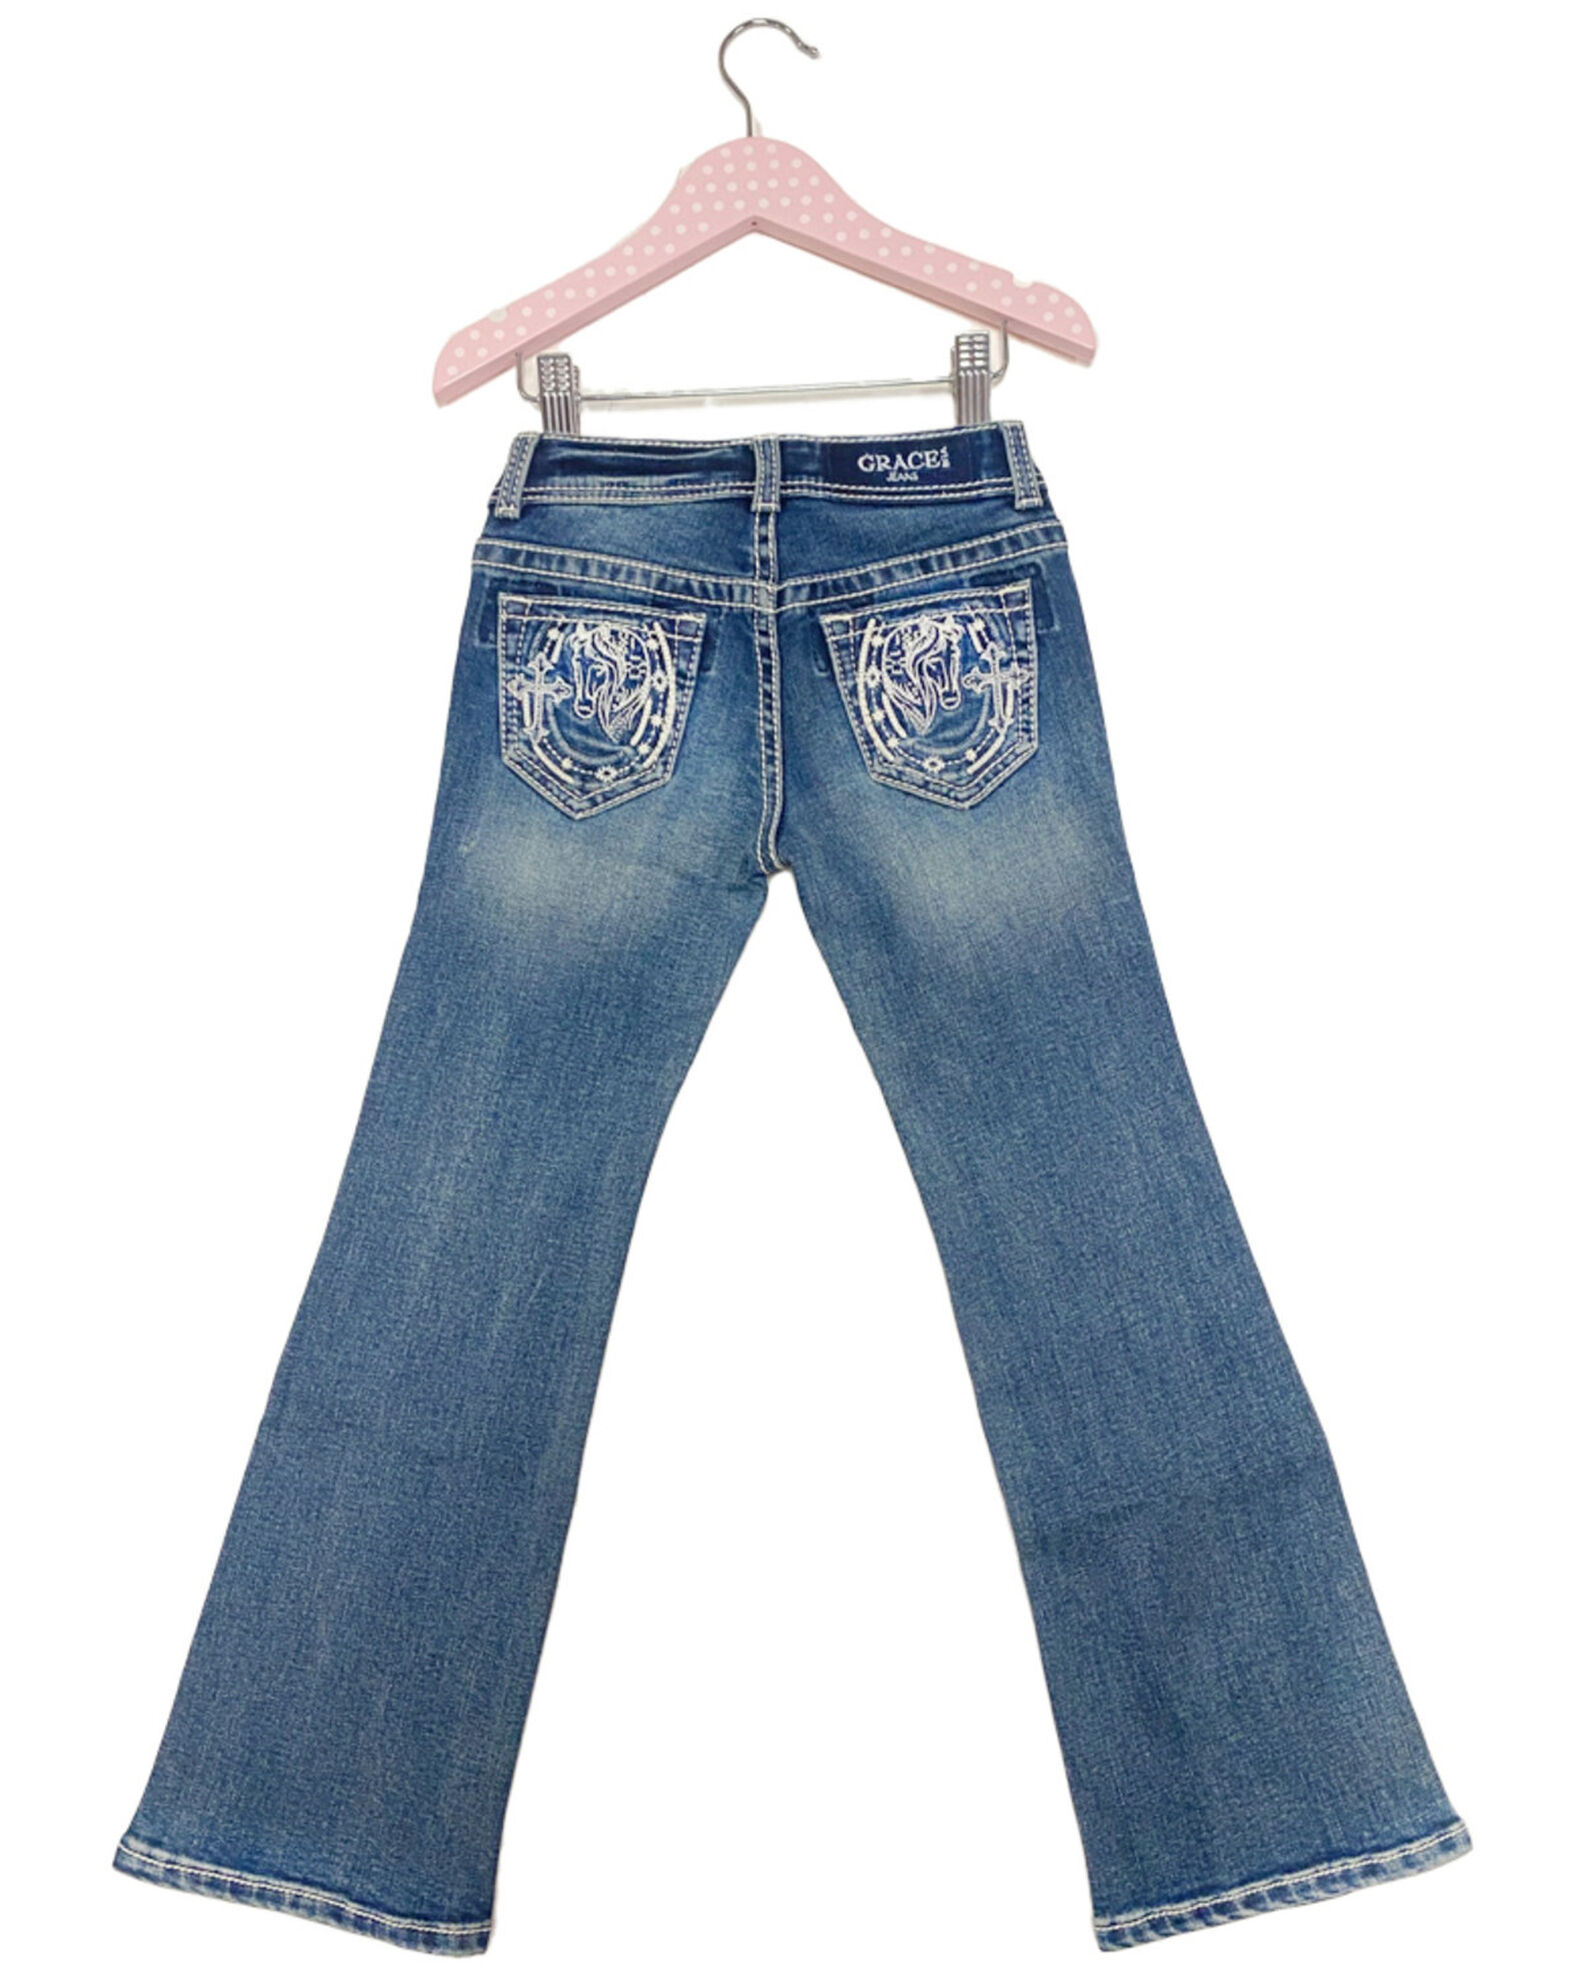 Garden Gallop Bootcut Jeans – TGC Brands